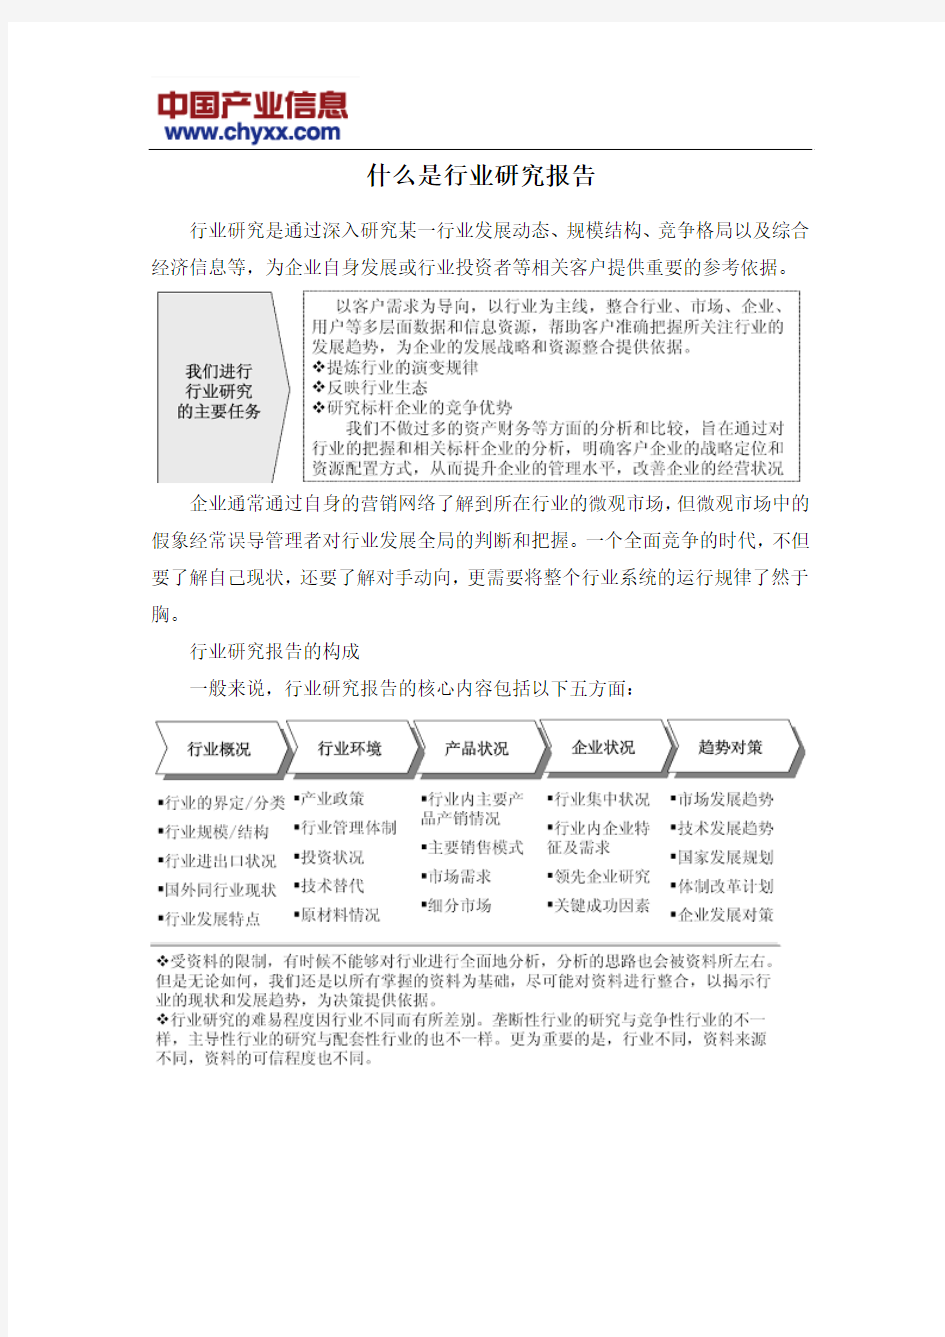 2016-2022年中国珠光颜料行业深度监测报告